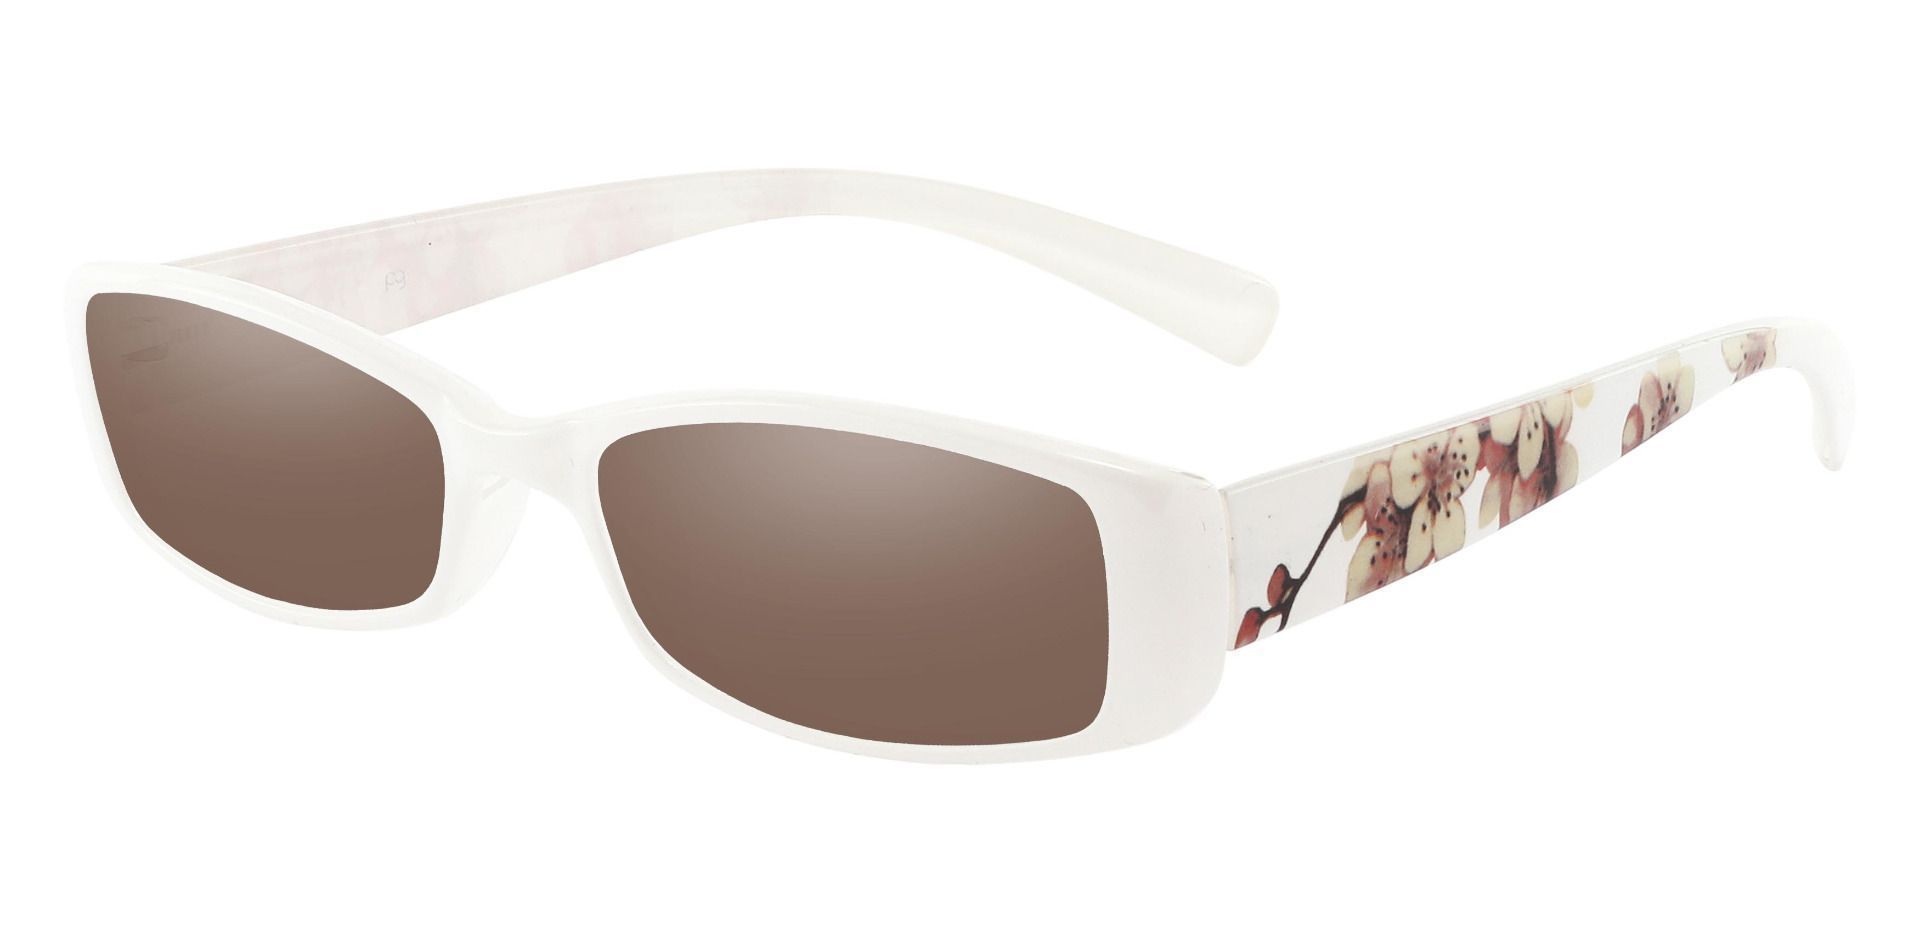 Medora Rectangle Reading Sunglasses - White Frame With Brown Lenses